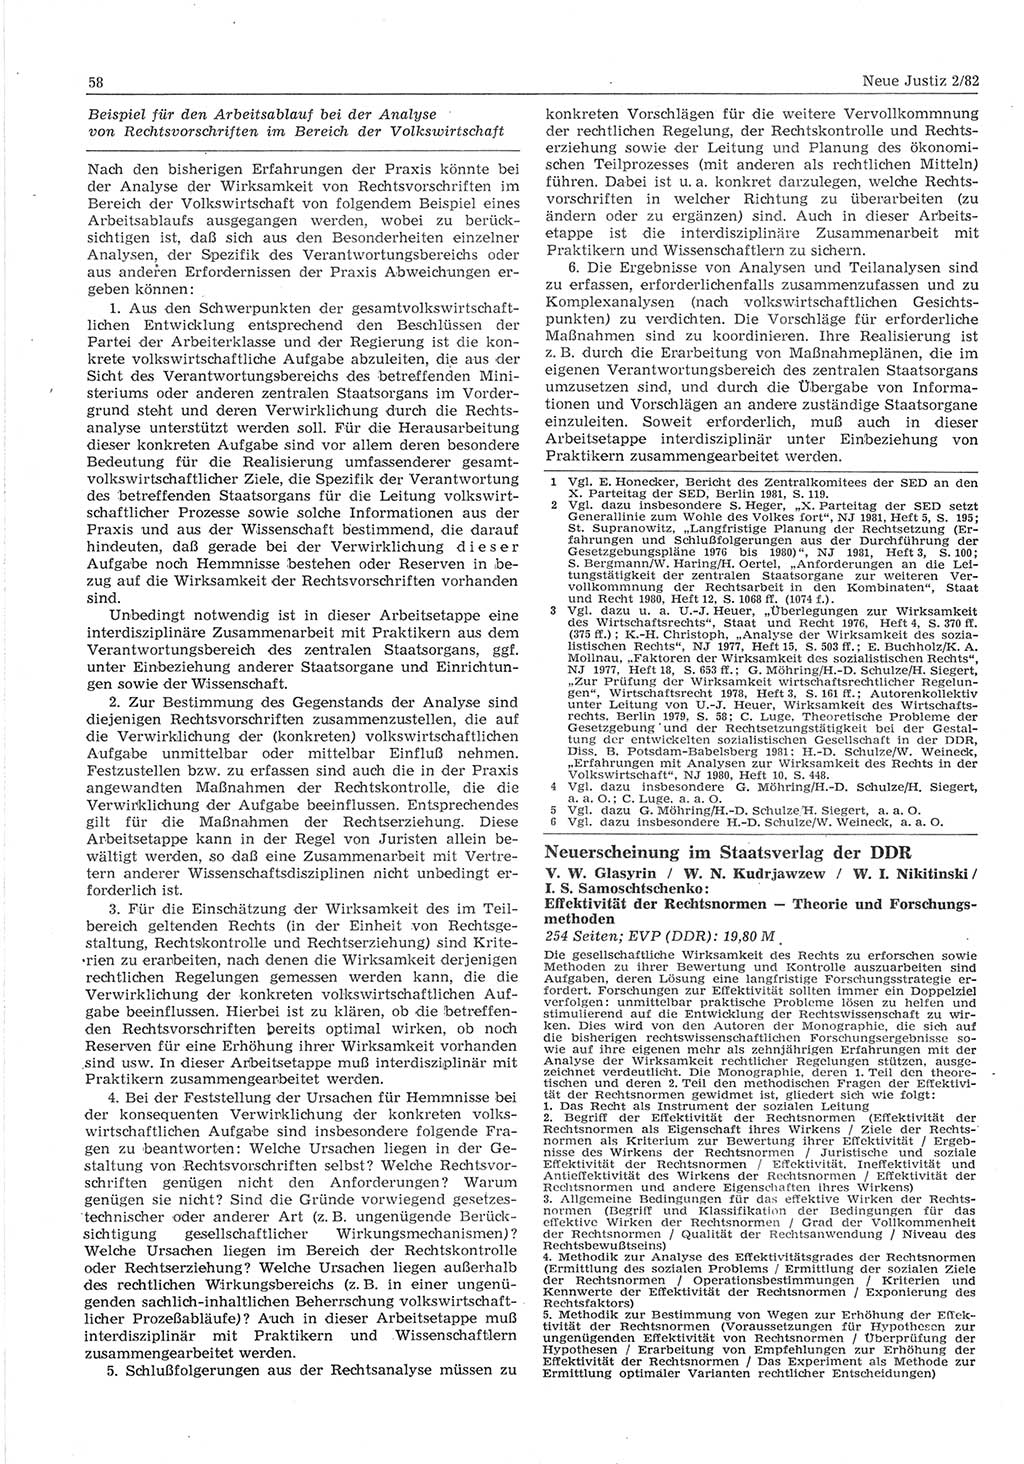 Neue Justiz (NJ), Zeitschrift für sozialistisches Recht und Gesetzlichkeit [Deutsche Demokratische Republik (DDR)], 36. Jahrgang 1982, Seite 58 (NJ DDR 1982, S. 58)